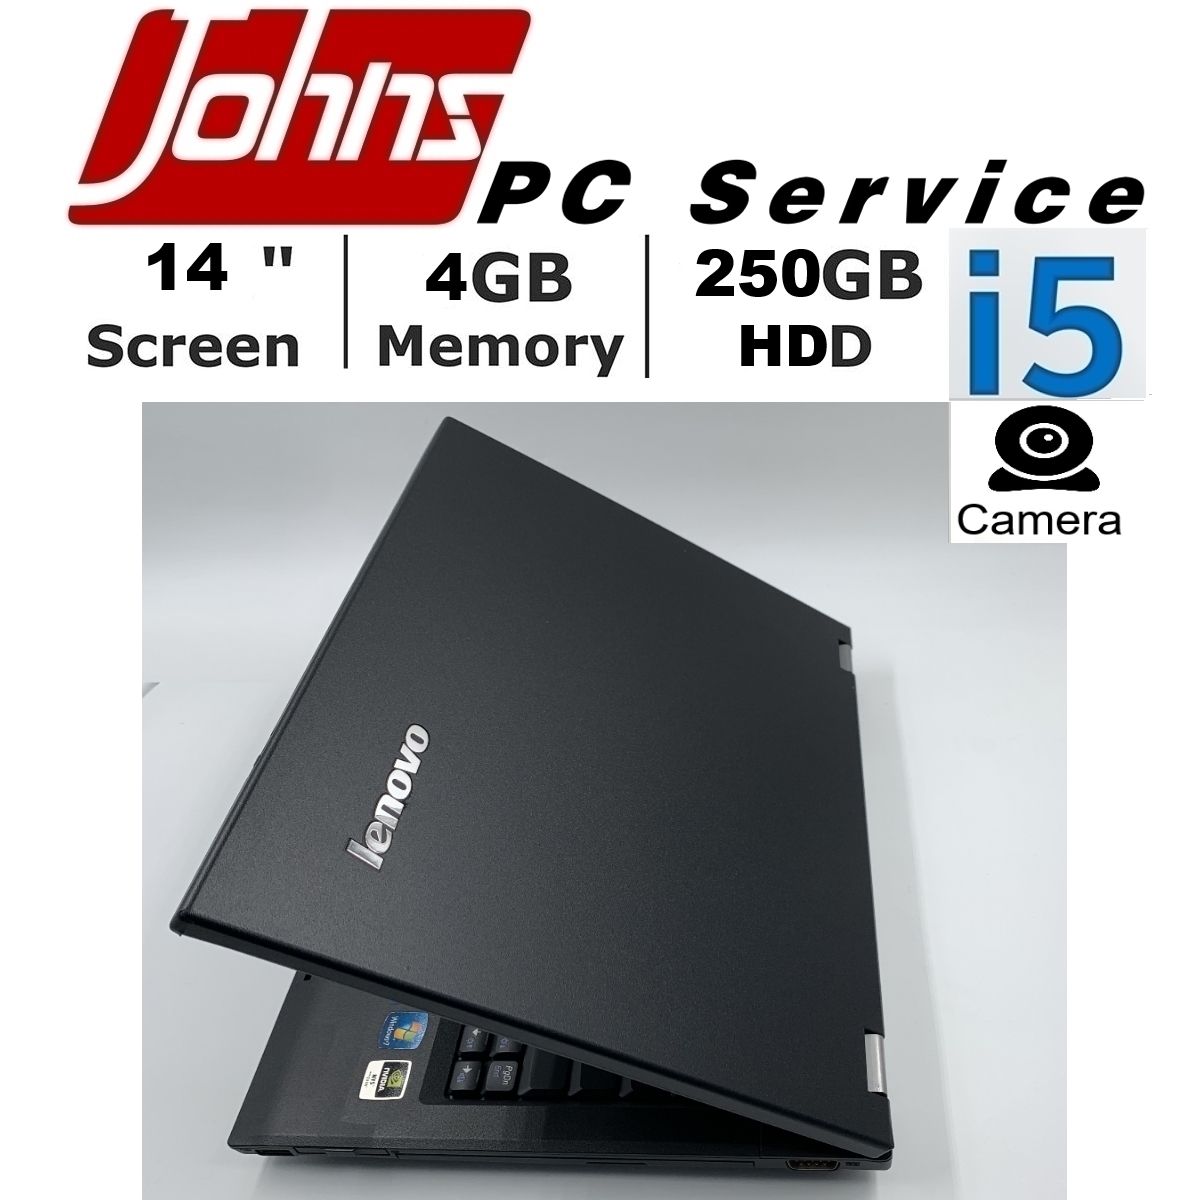 โน๊ตบุ๊คมือสอง Lenovo ThinkPad L530 i5 gen3 //Toshiba S500/R732 ราคาถูกๆ โน๊ตบุ๊ค laptop มือสอง โน็ตบุ๊คมือ2 โน้ตบุ๊คถูกๆ โน๊ตบุ๊คมือสอง2